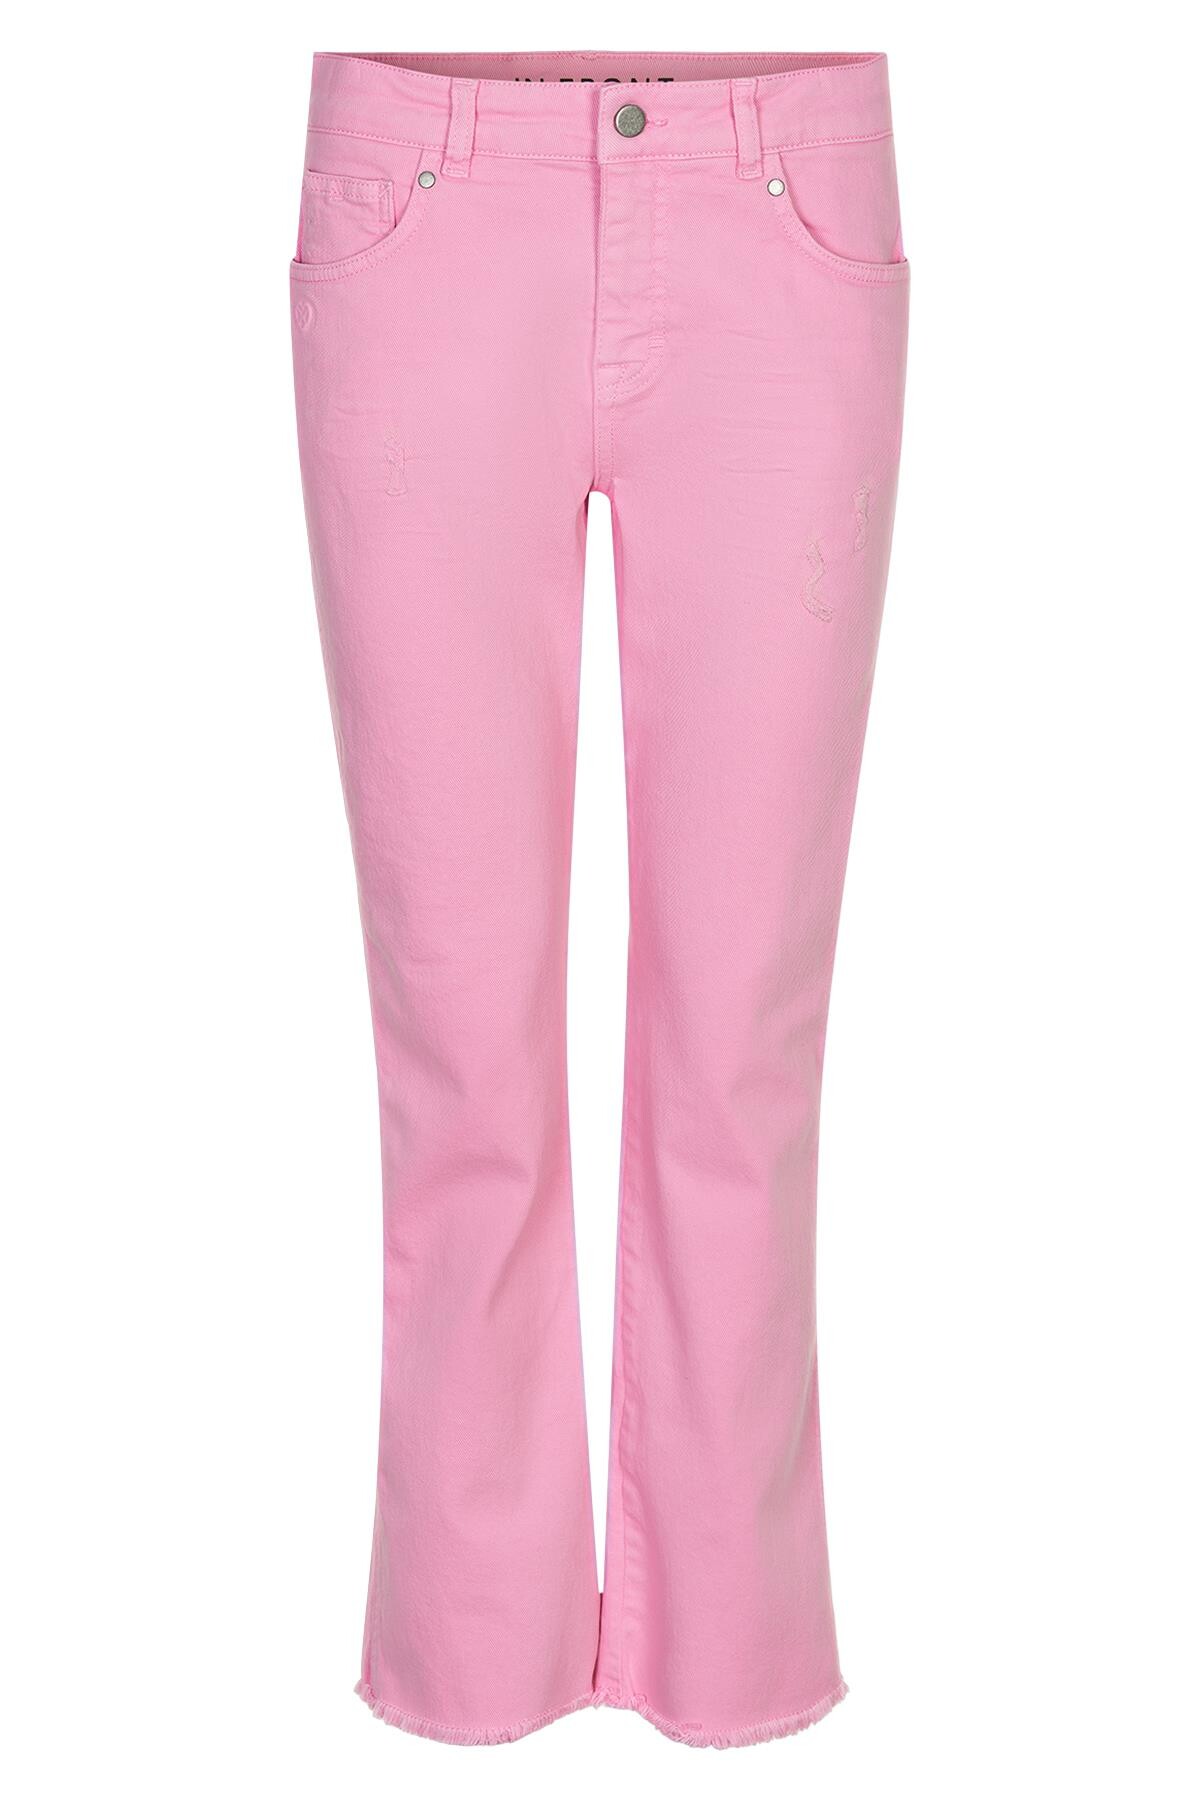 Billede af IN FRONT Ellie Jeans, Farve: Soft Pink, Størrelse: 38, Dame